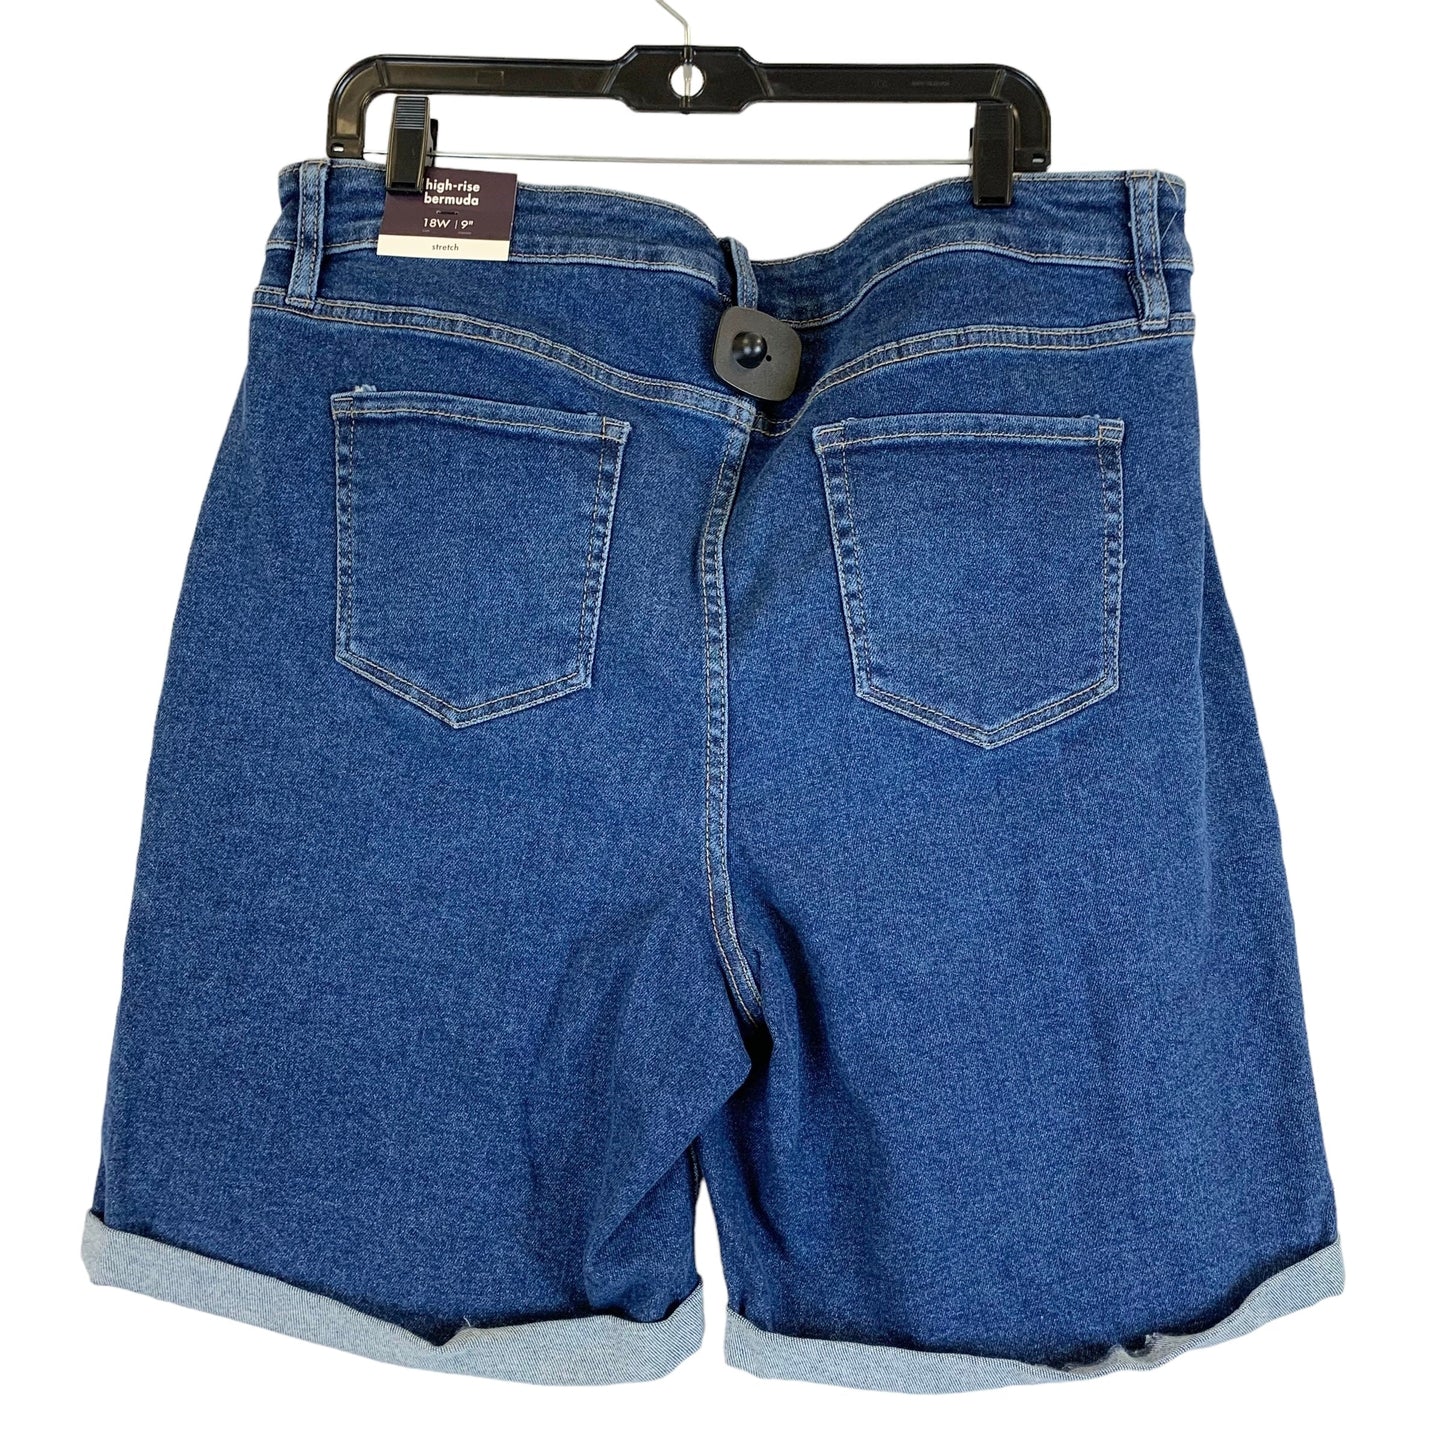 Shorts By Ava & Viv  Size: 1x